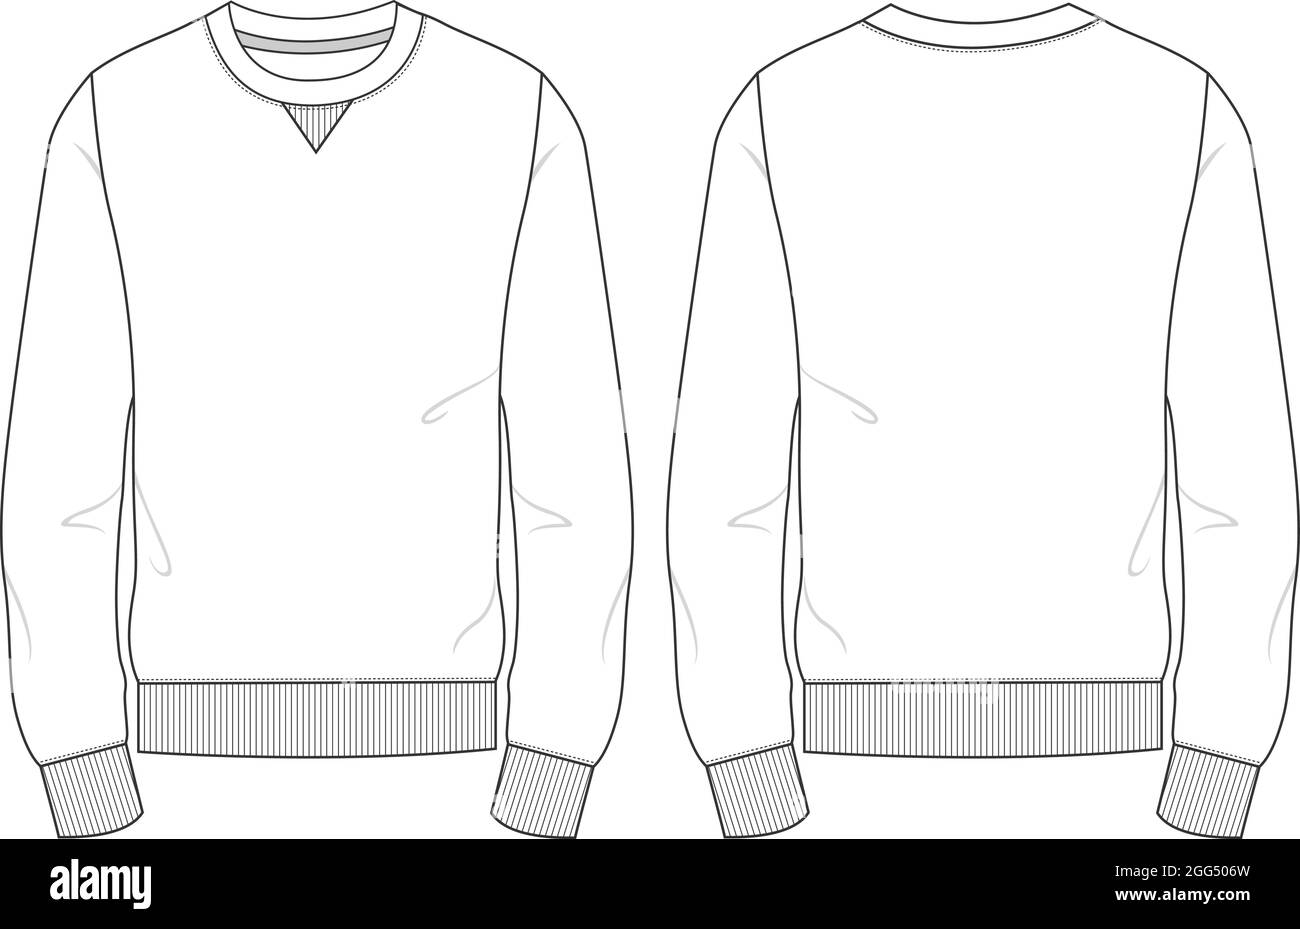 Disegno tecnico maglione Immagini senza sfondo e Foto Stock ritagliate -  Alamy